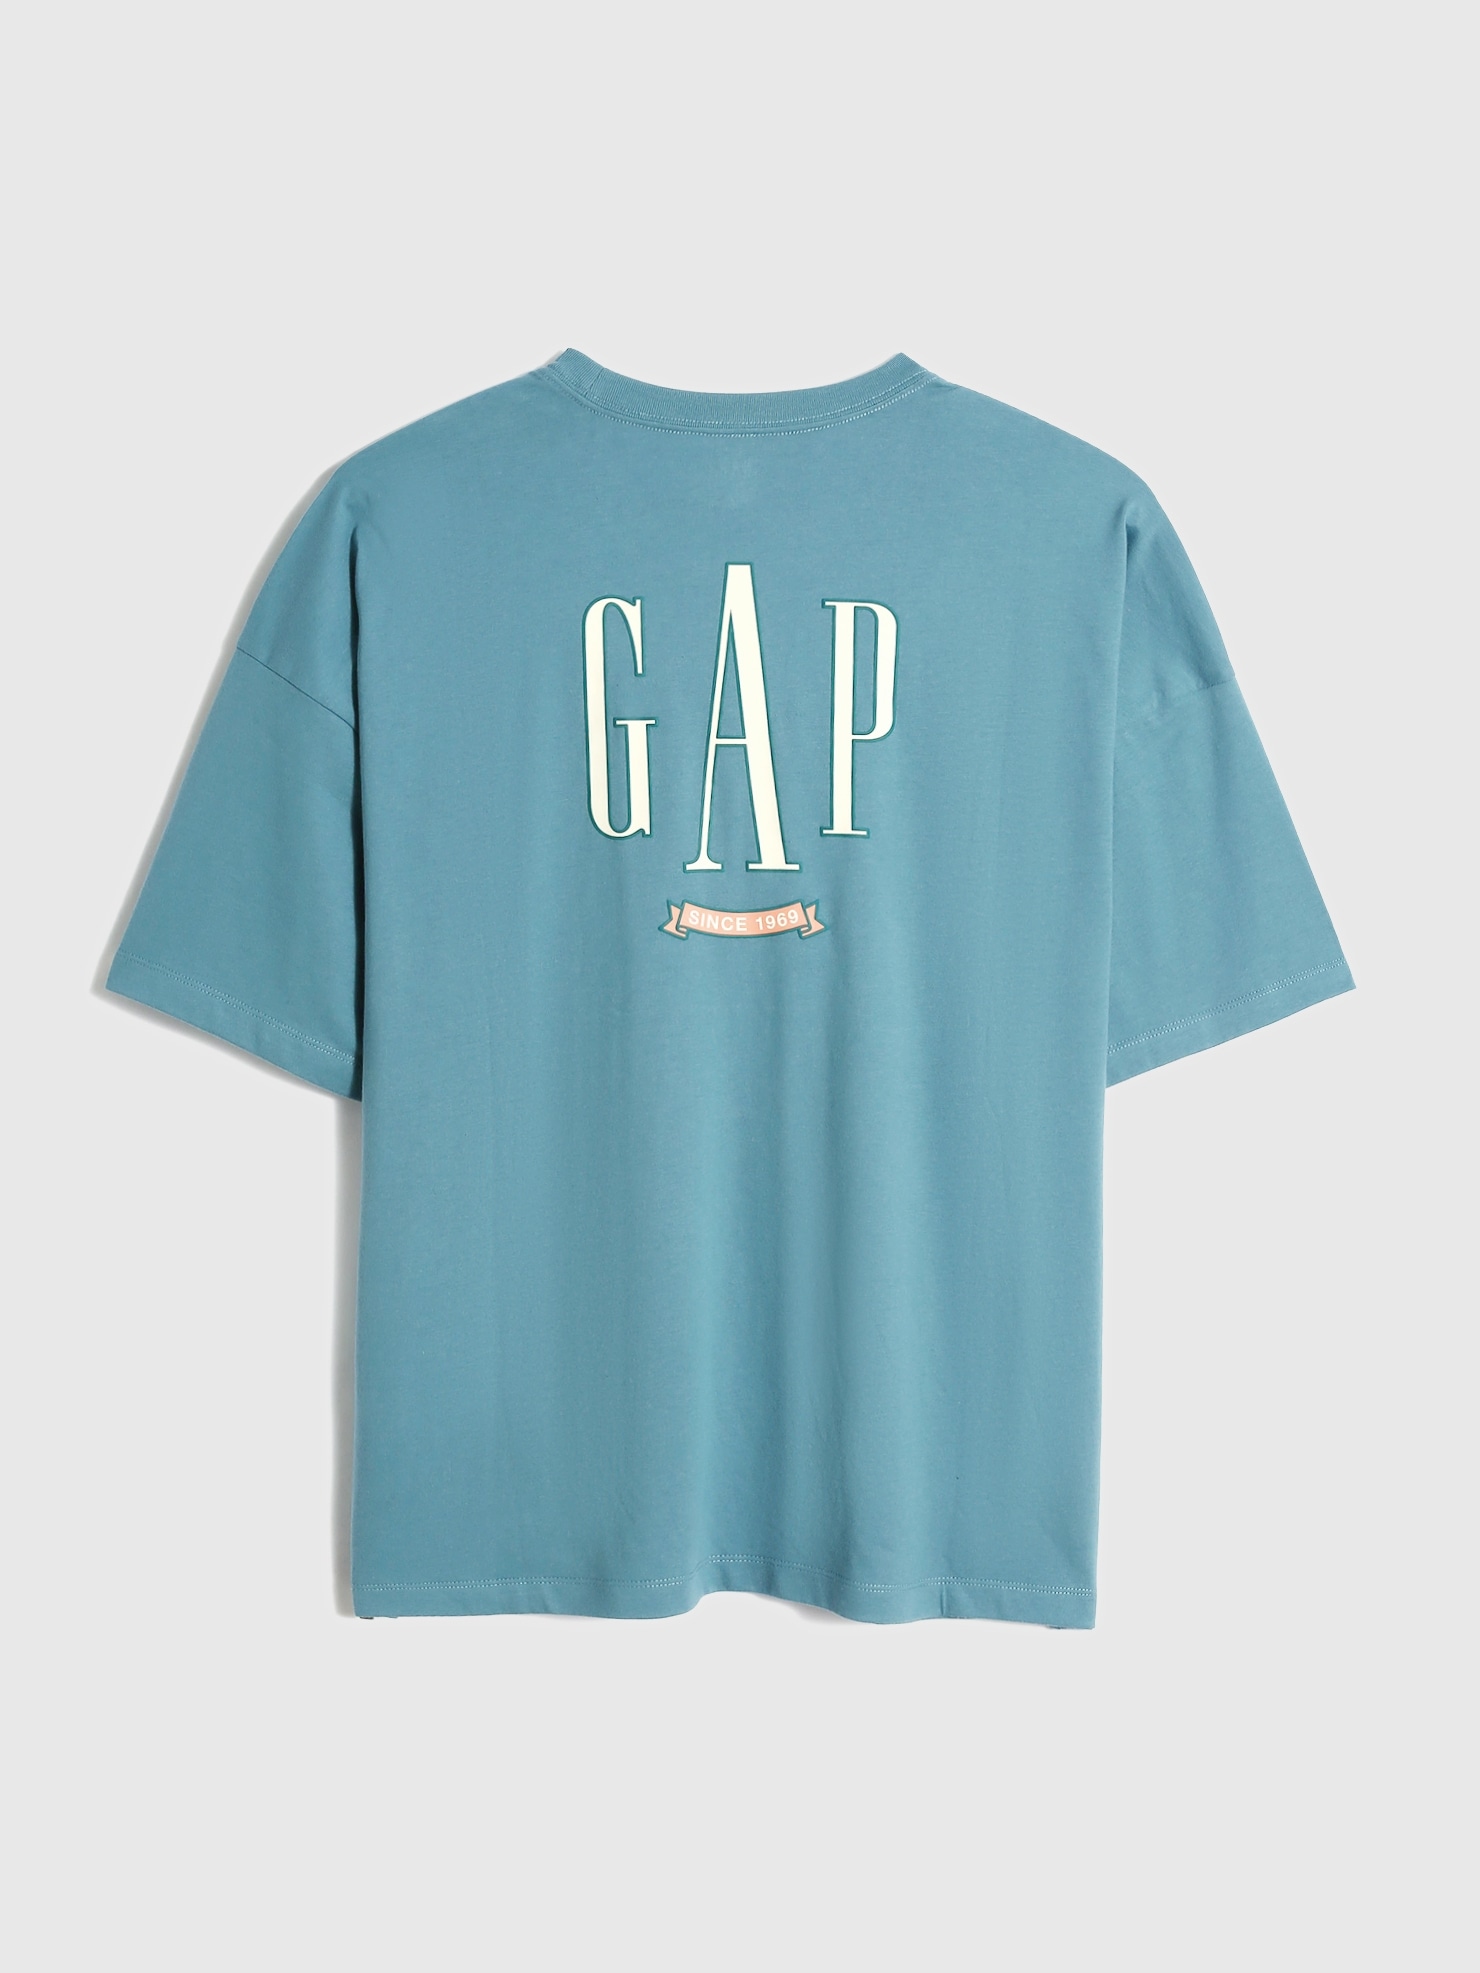 ソフトジャージー バックgapロゴ Tシャツ (ユニセックス)